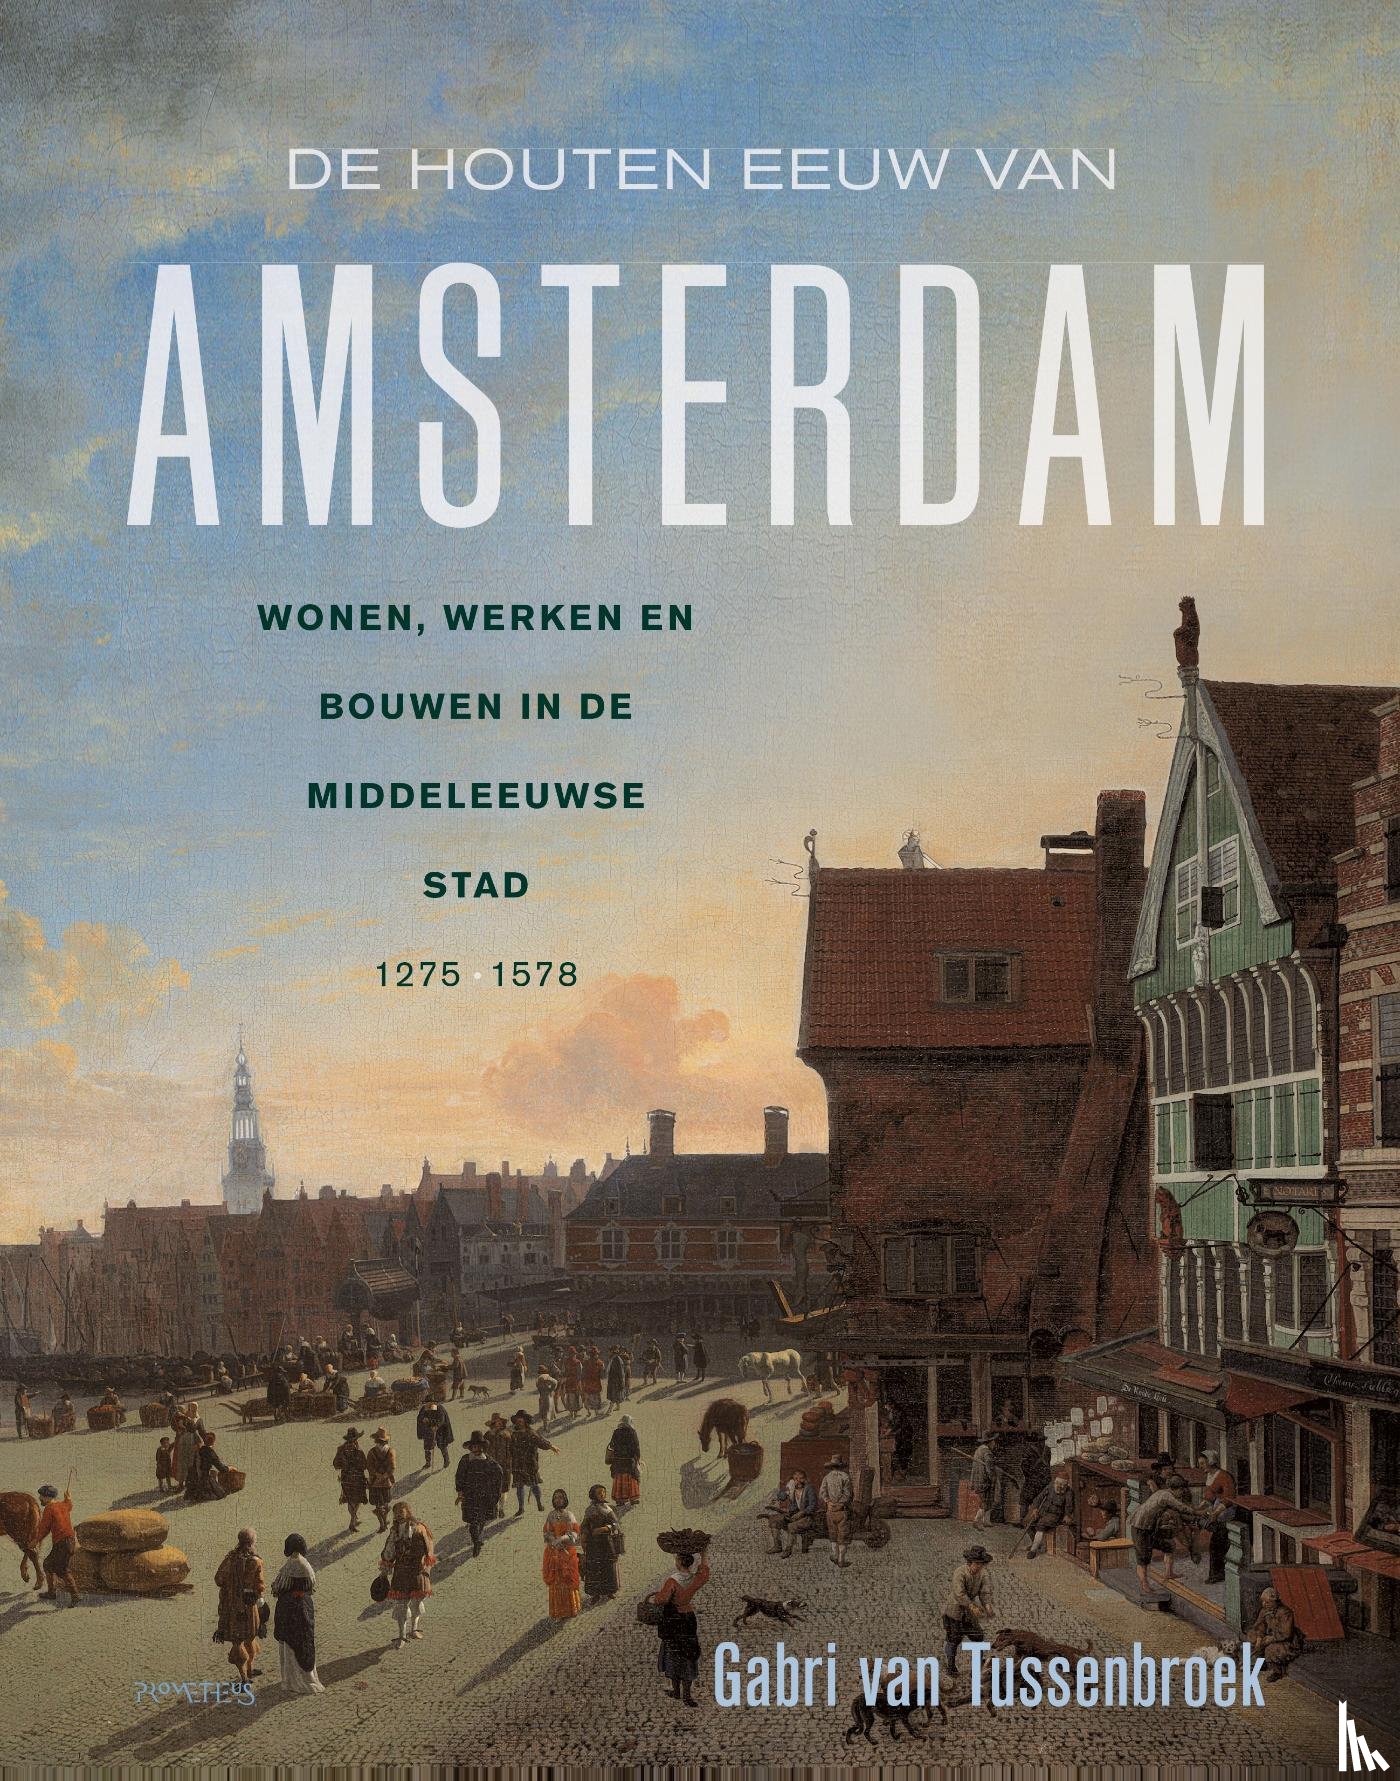 Tussenbroek, Gabri van - De houten eeuw van Amsterdam